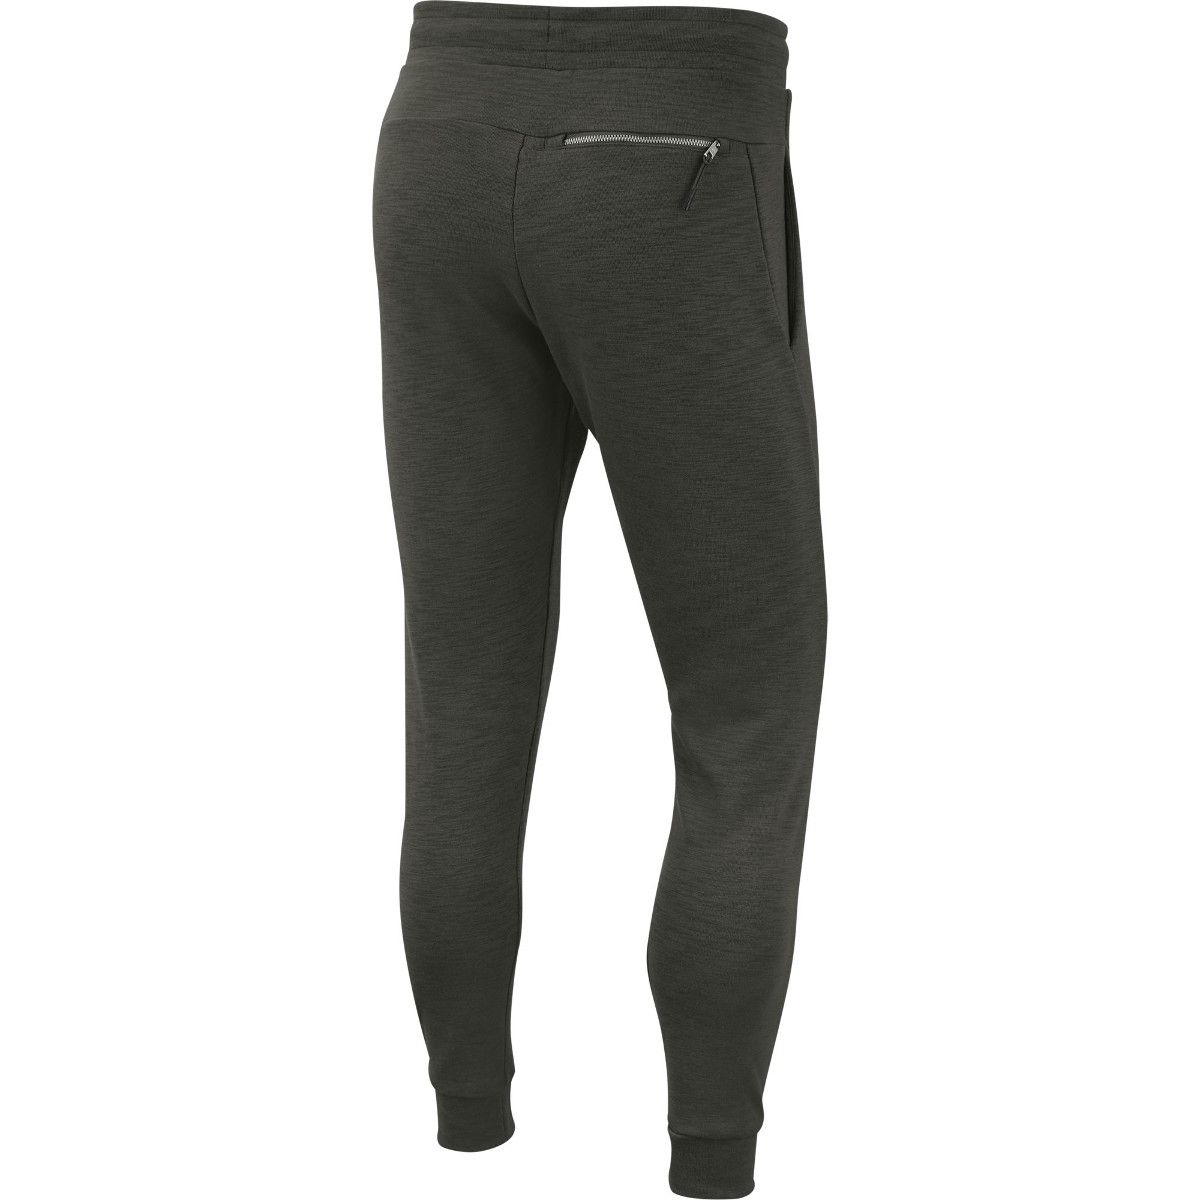 Nike Sportswear Optic Fleece Men's Running Pants 928493-356